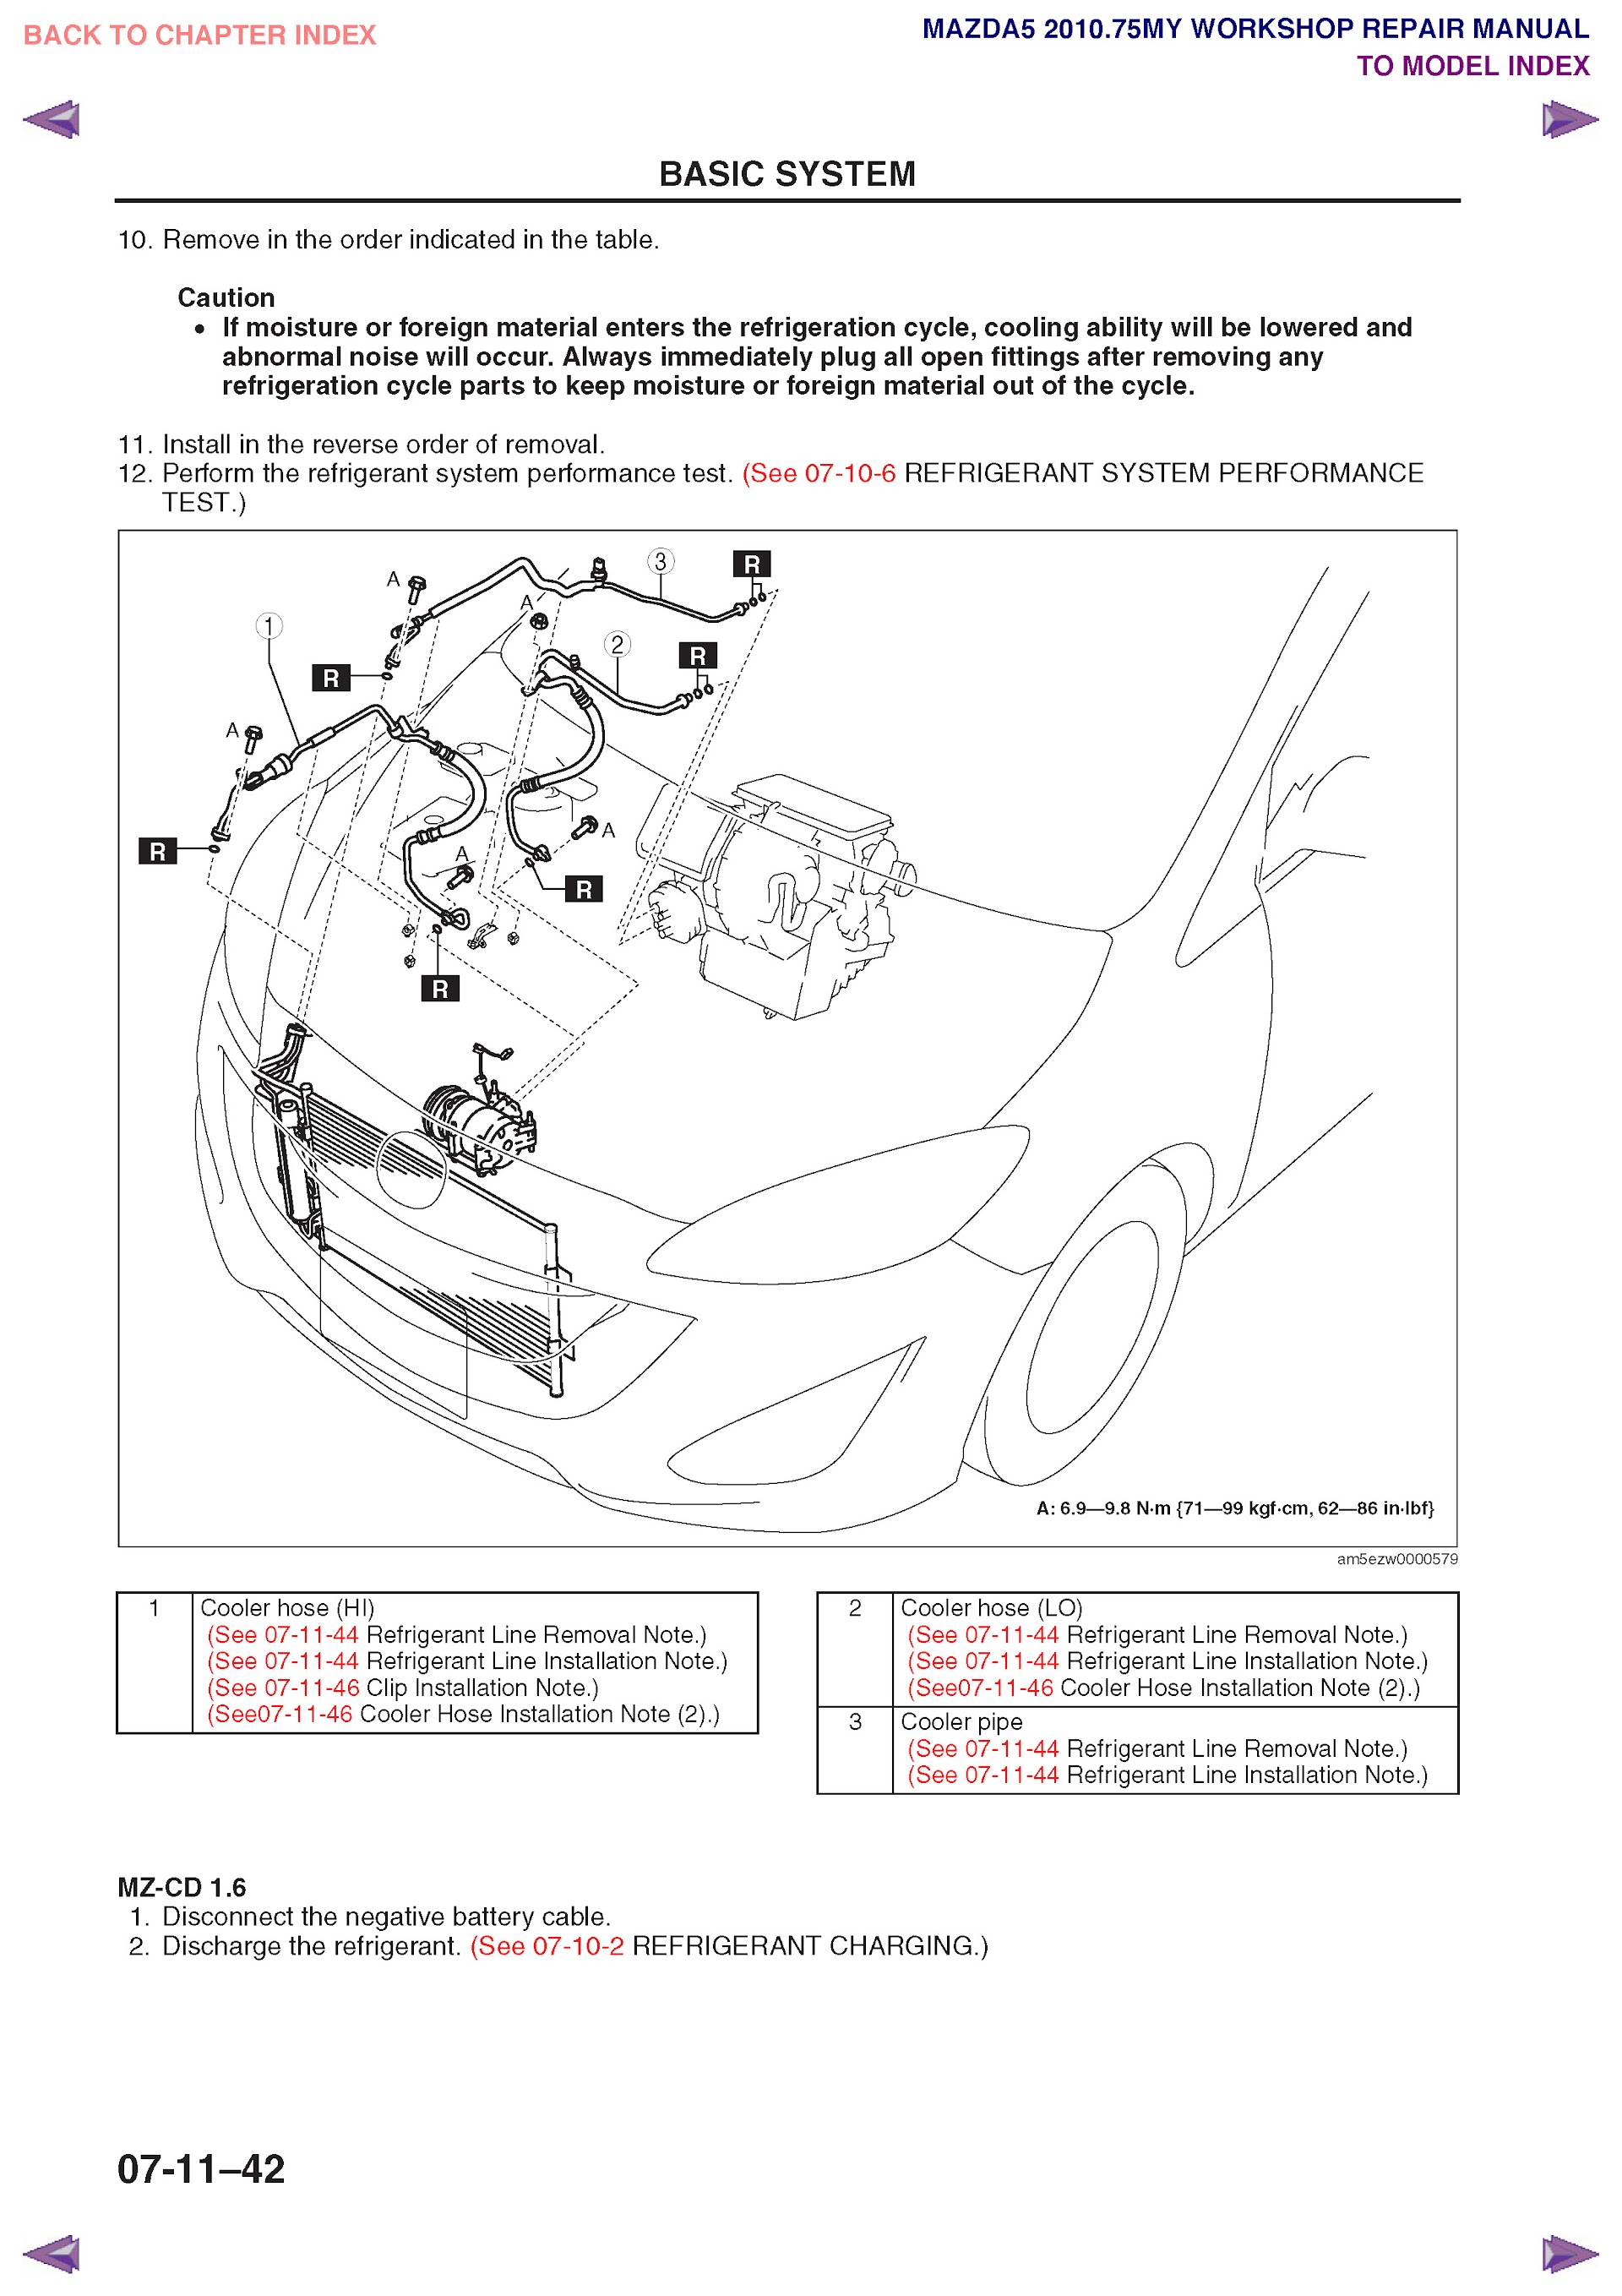 2010 Mazda mazda5 workshop repair manual in PDF file format.